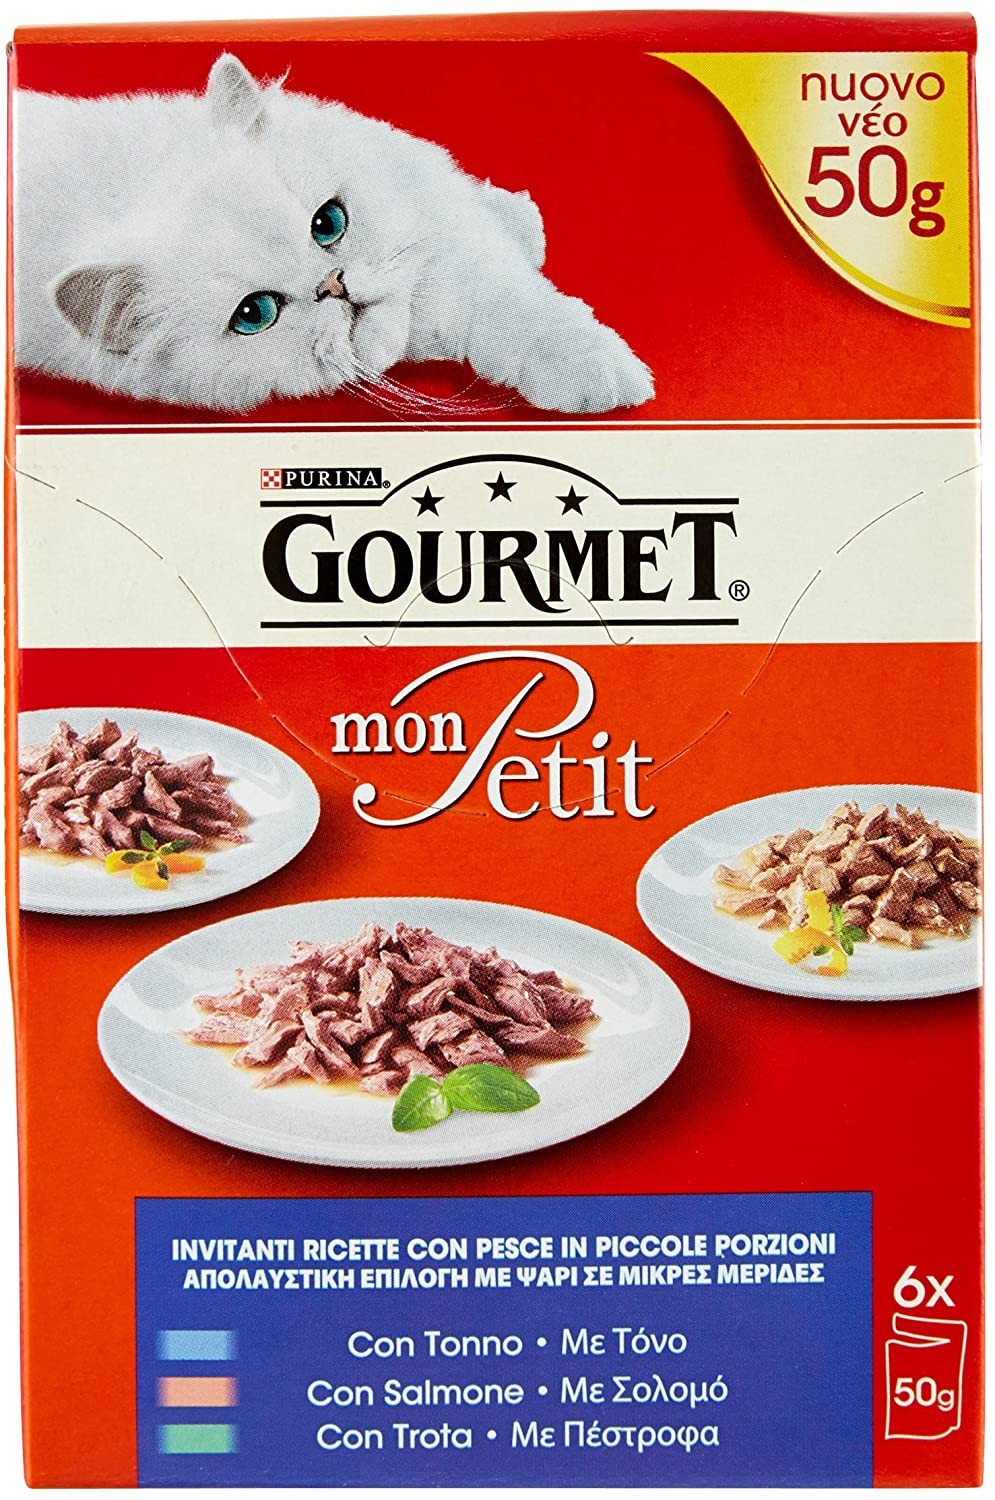 Purina Gourmet Mon Petit Cibo per Gatti con Tonno, Salmone e Trota, 6 x 50g